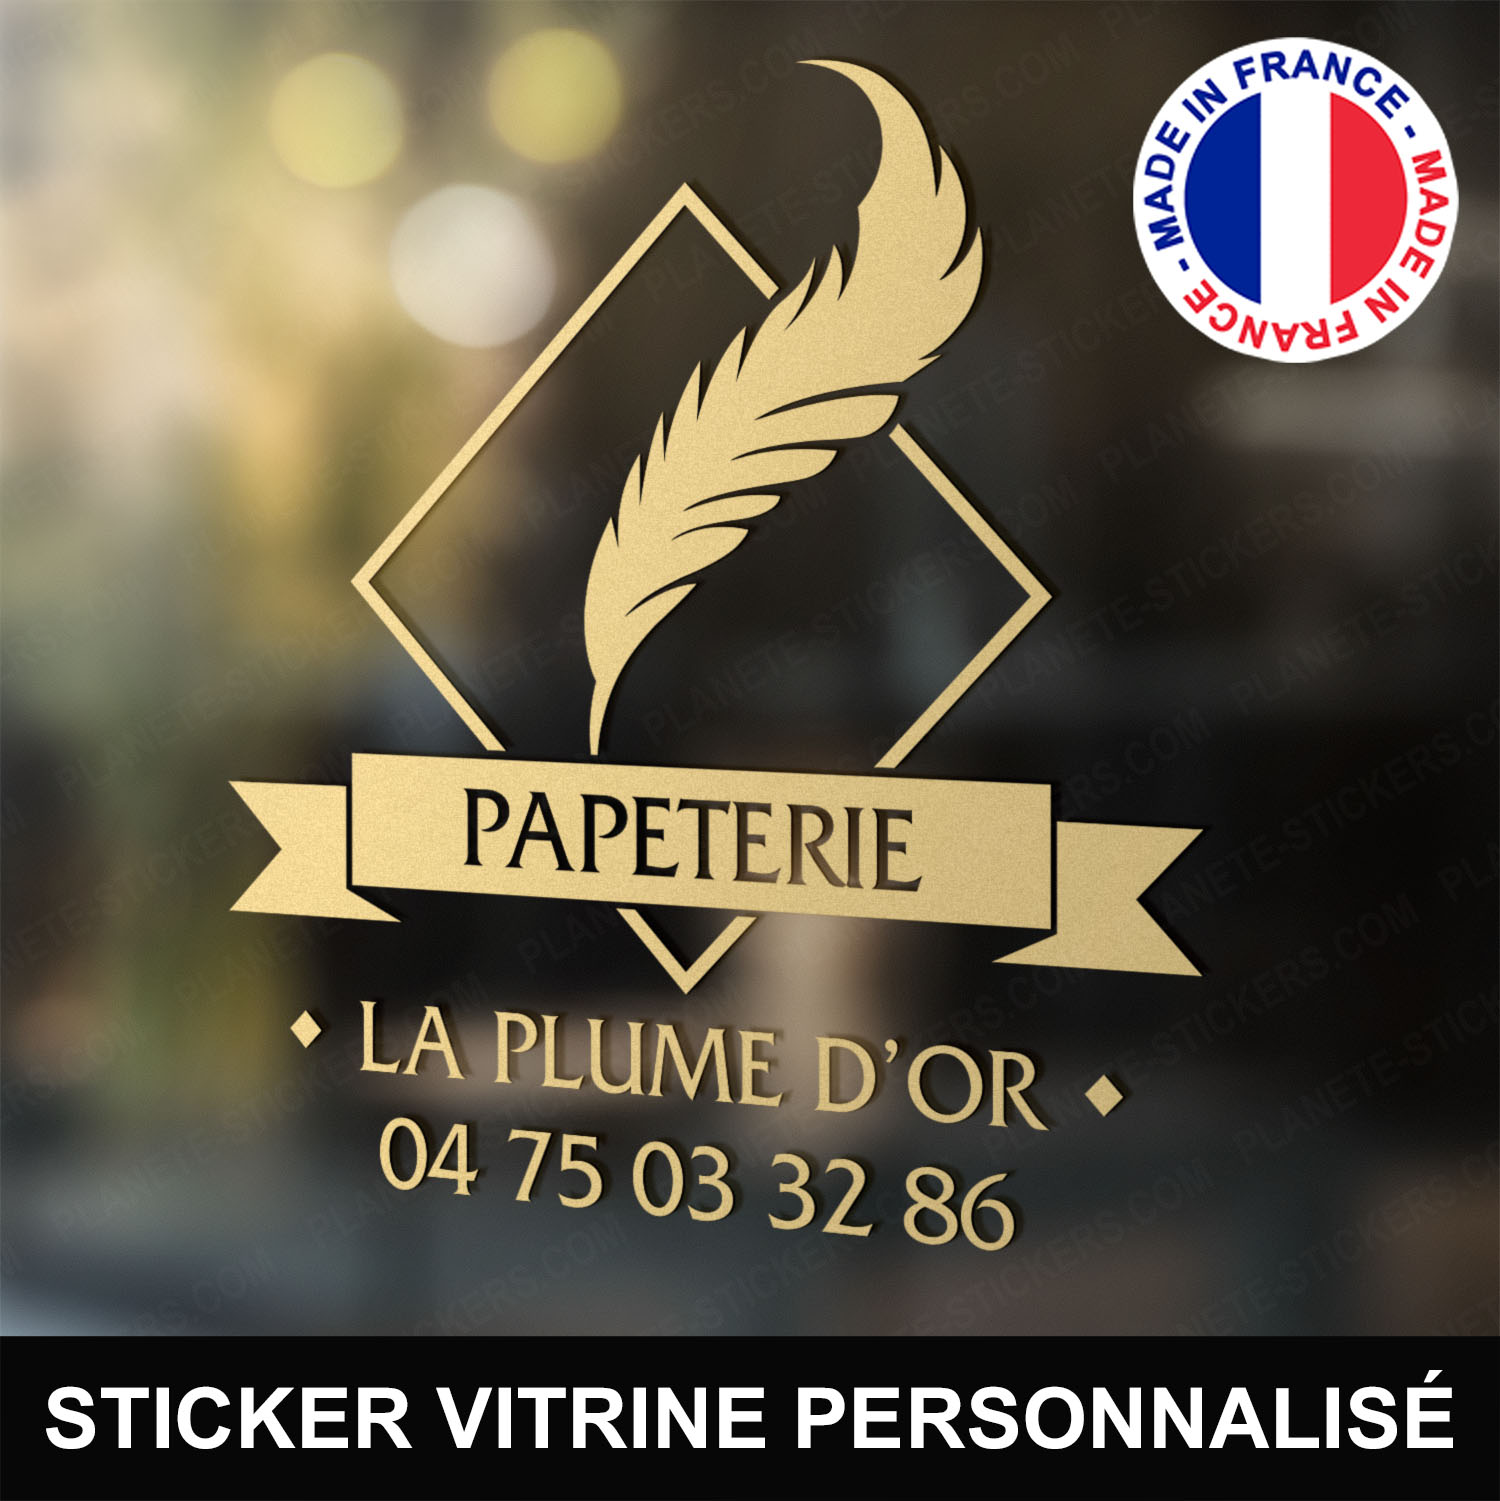 ref9papeterievitrine-stickers-papeterie-vitrine-sticker-personnalisé-autocollant-pro-papetier-vitre-professionnel-logo-plume